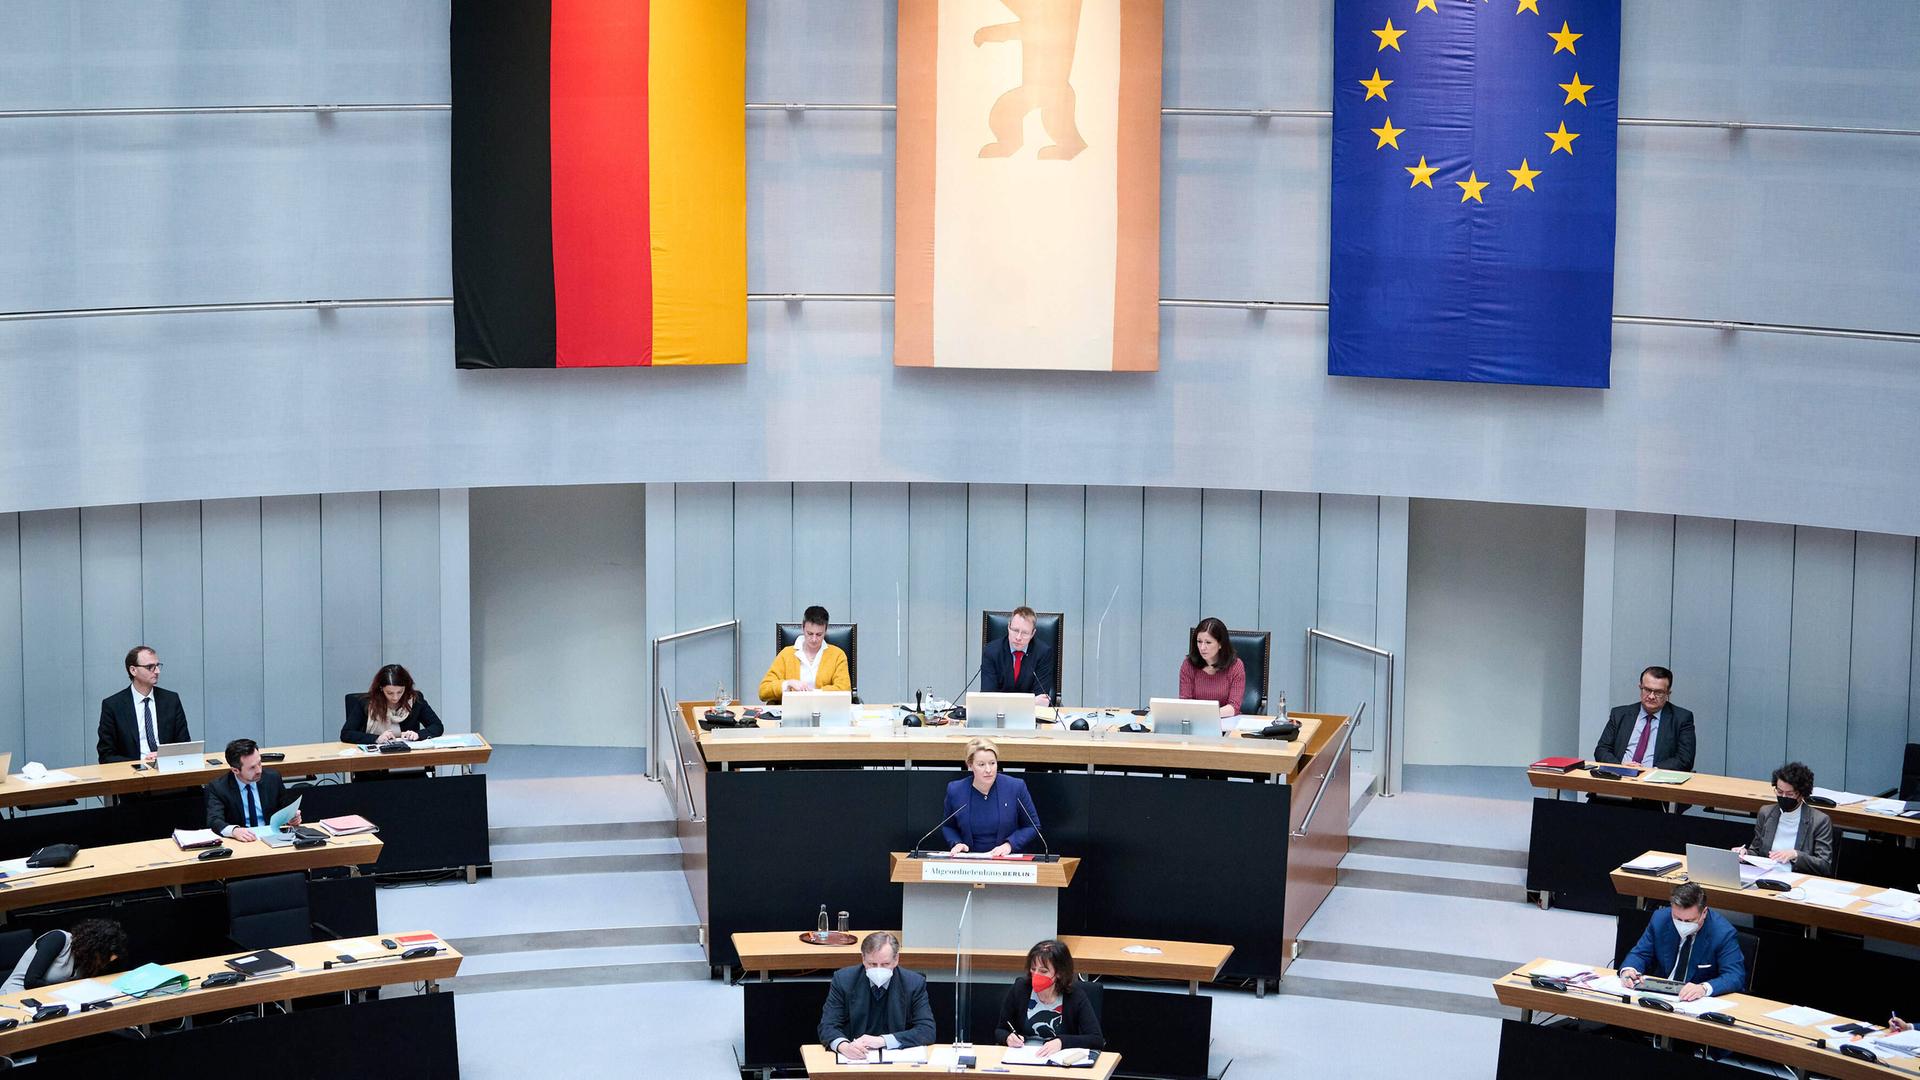 Während einer Sitzung des Berliner Abgeordnetenhaus sitzen die Abgeordneten an ihren Plätzen.